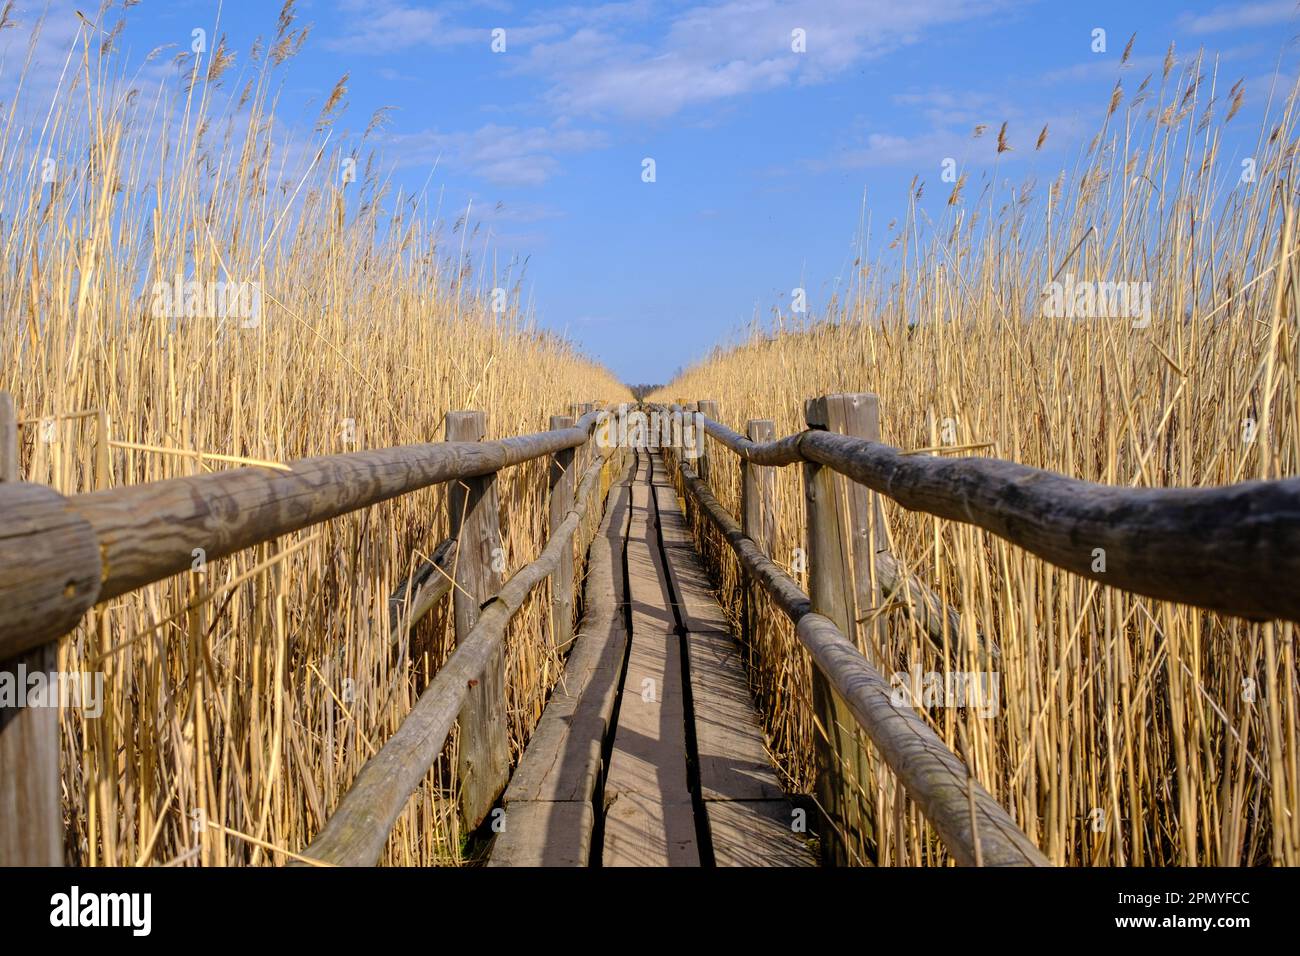 Reed Trail am Kaniera See. Wunderschöne Landschaft mit Holzsteg für Fußgänger. Frühling in Lettland. Stockfoto